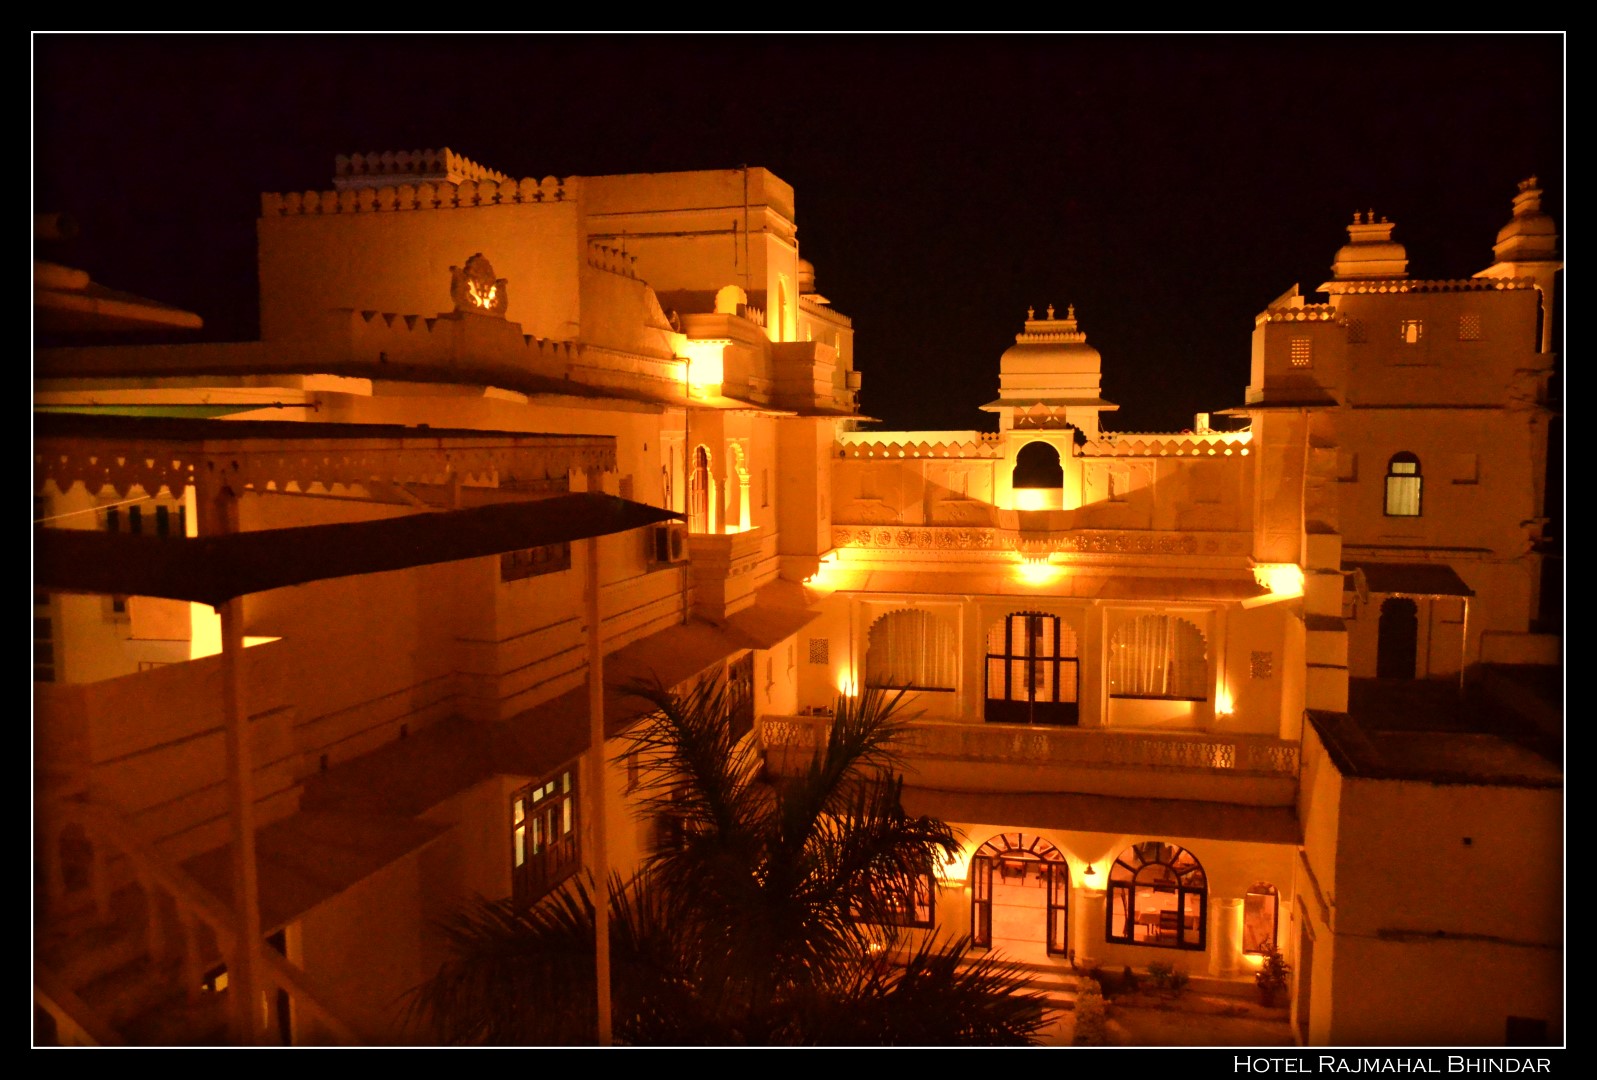 Hotel Rajmahal Bhindar welcomes 2013 | UdaipurBlog